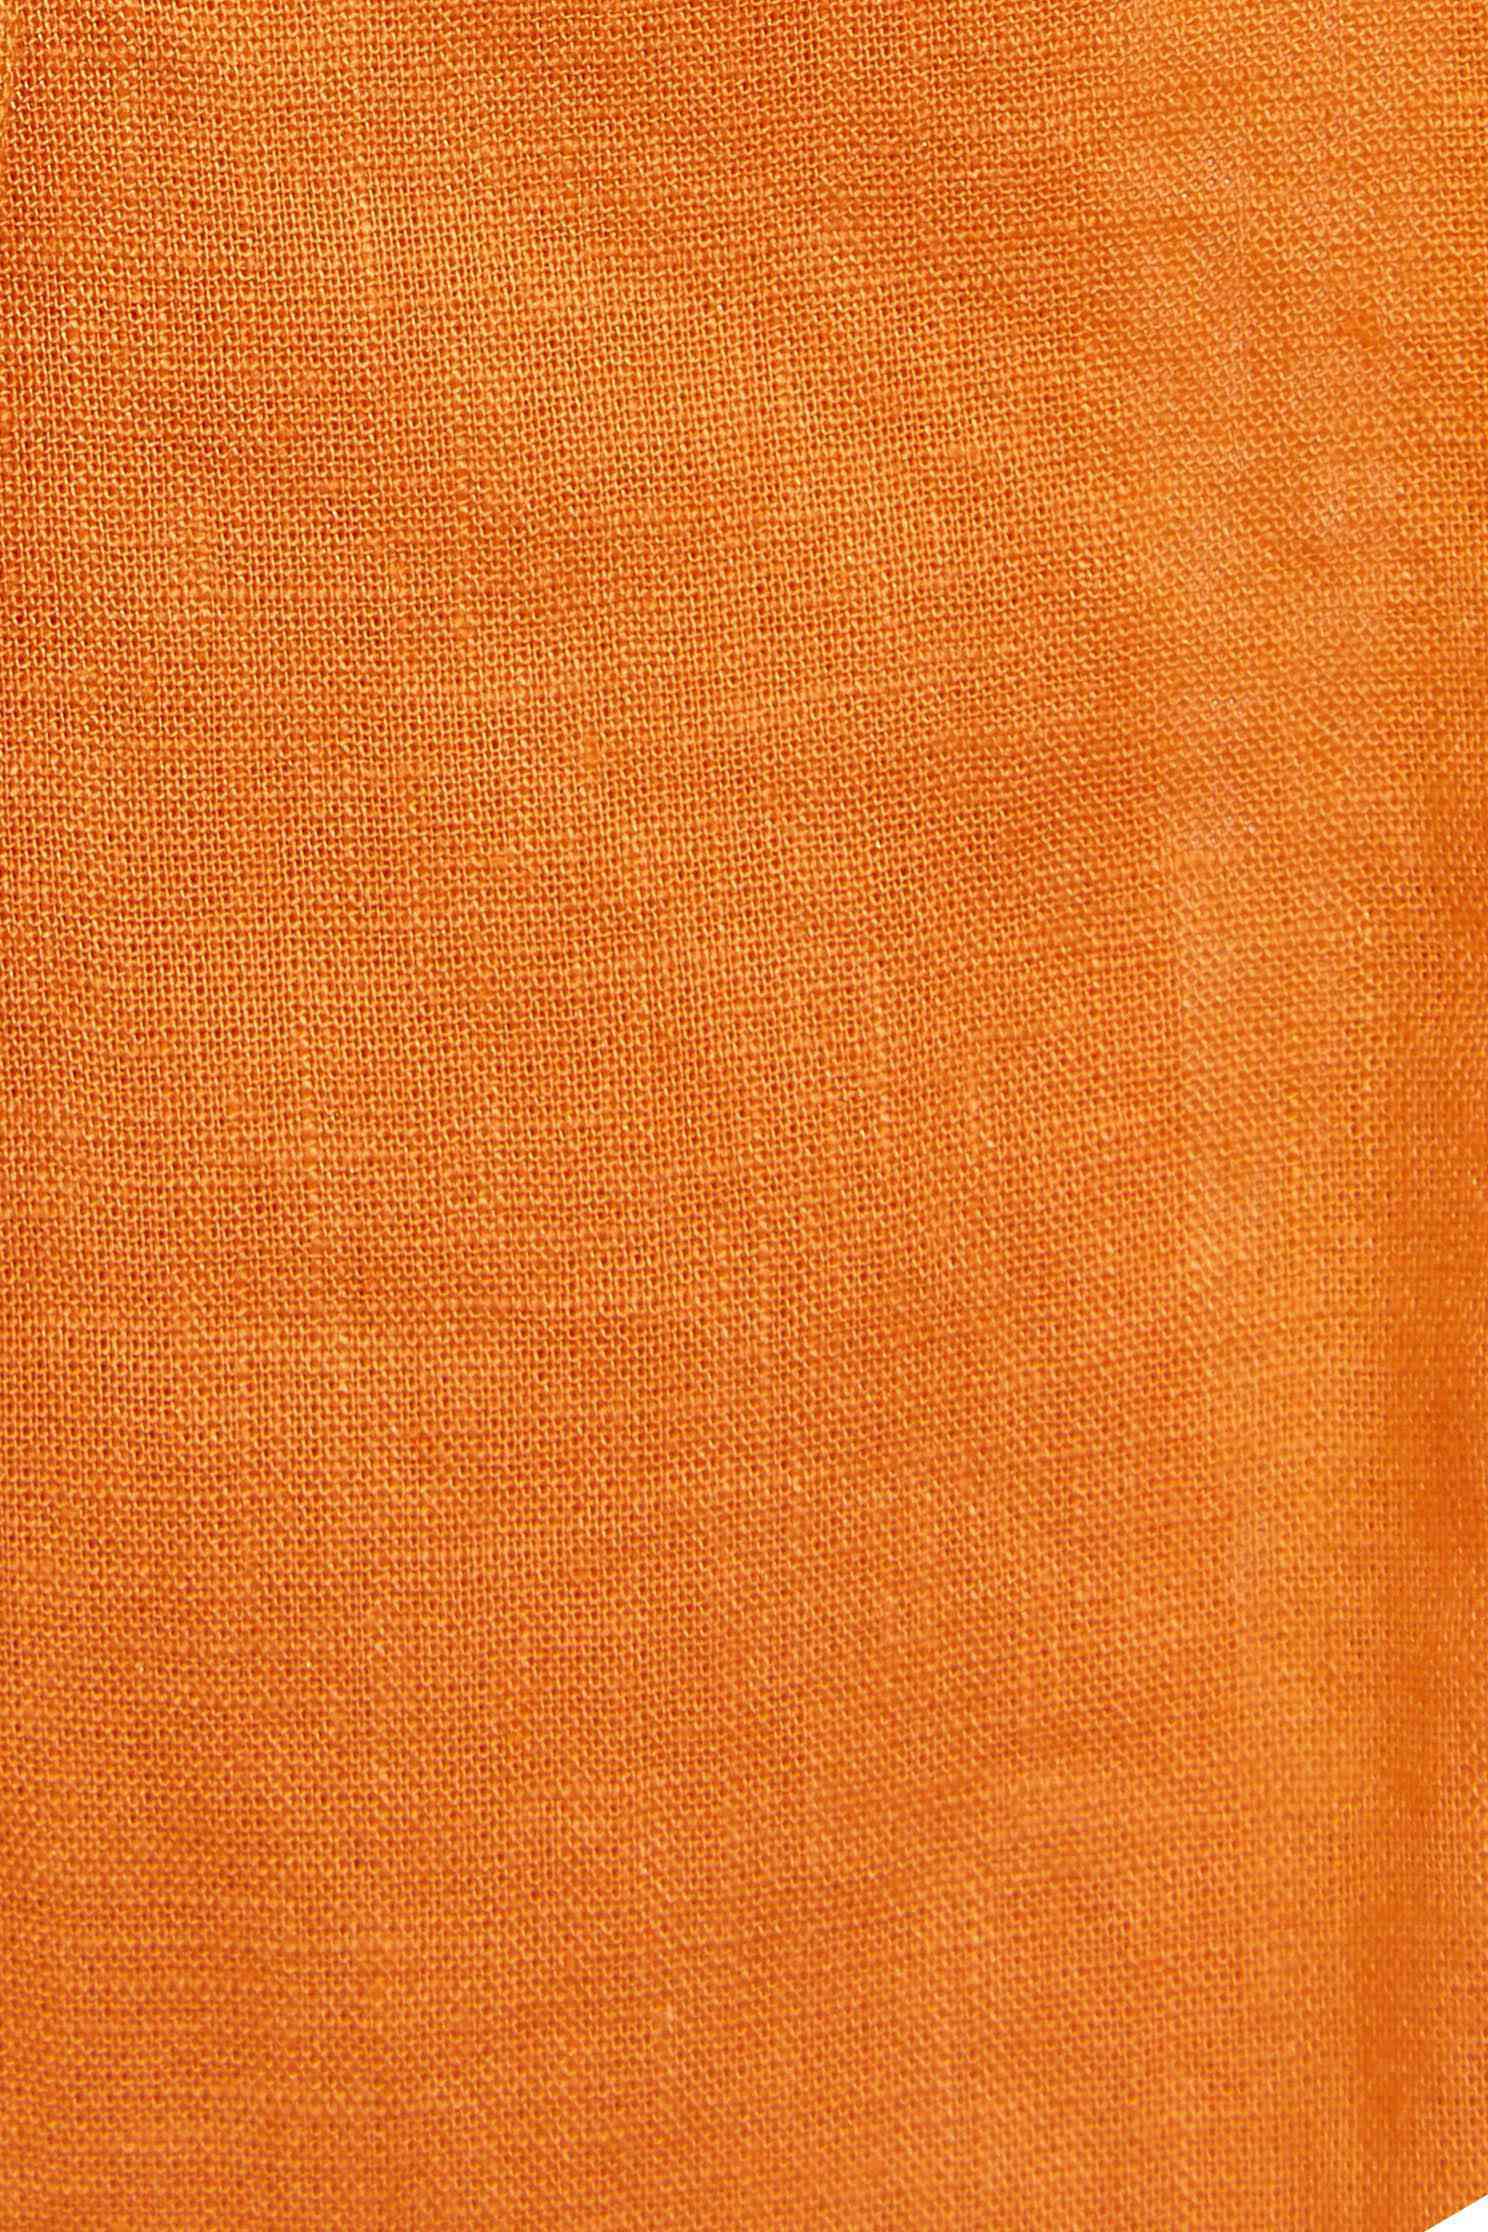 橘色棉麻經典西裝外套橘色棉麻經典西裝外套,外套,春夏穿搭,西裝外套,解封企劃